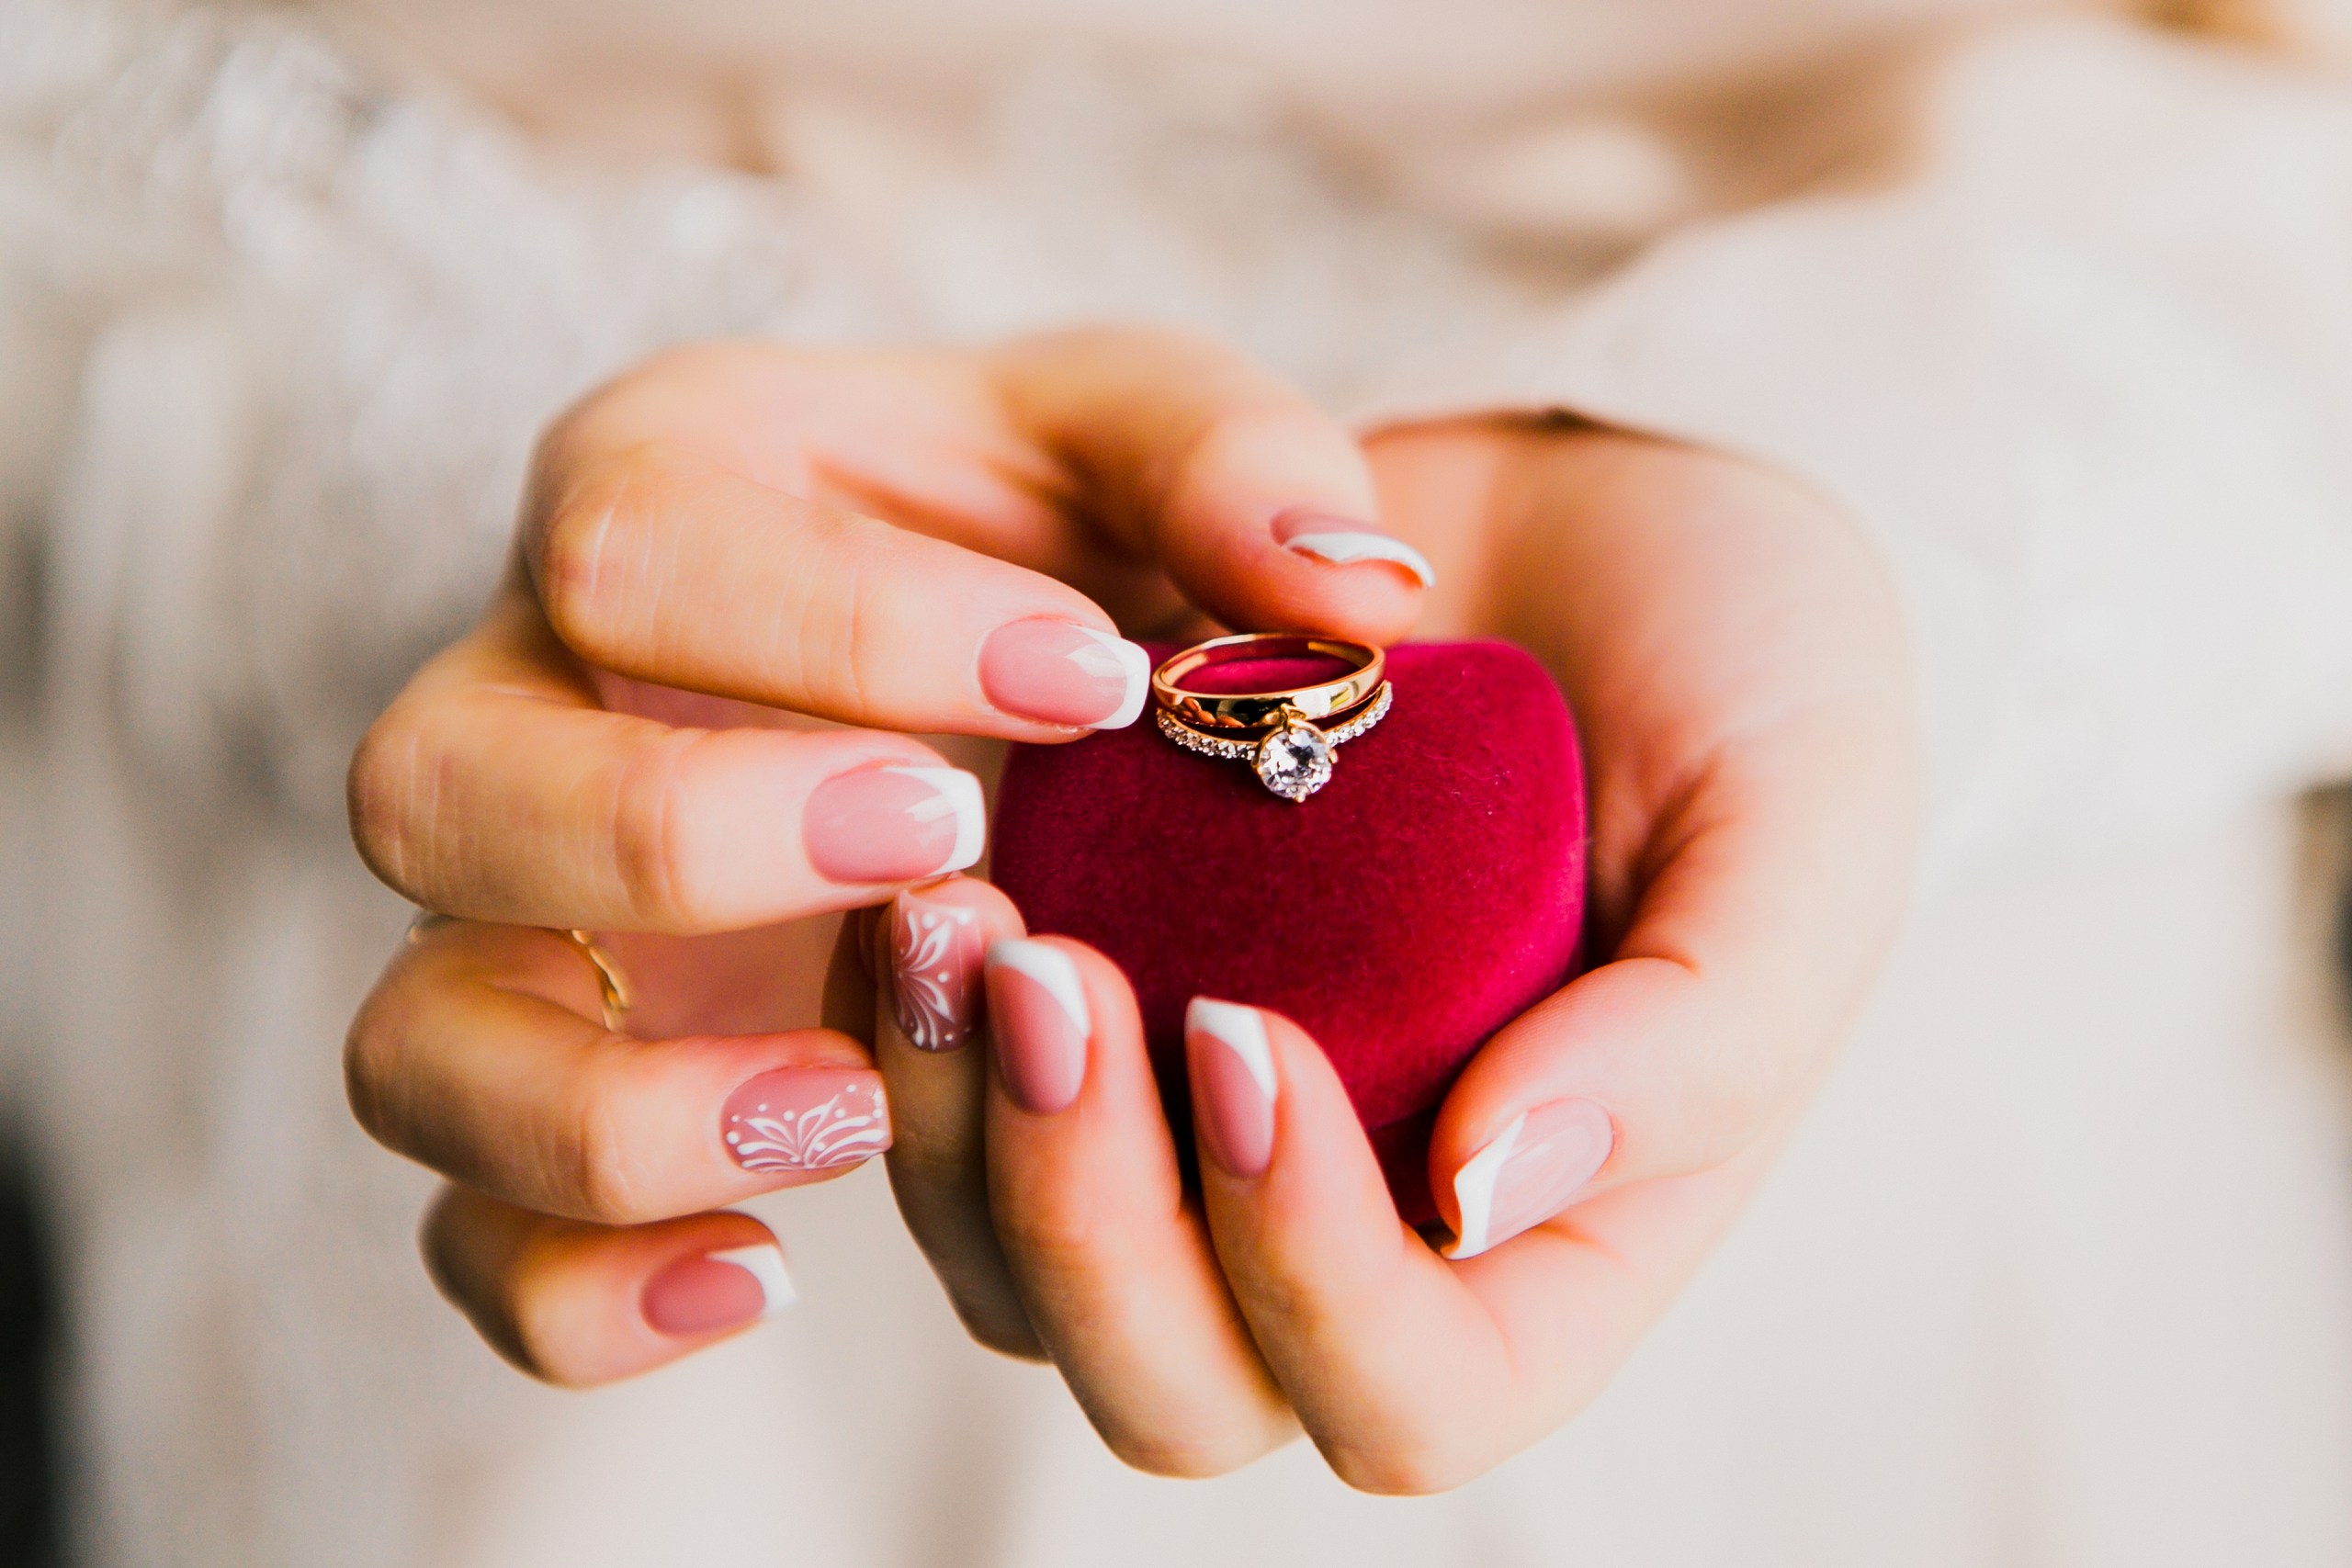 Получить кольцо в подарок. Кольцо подарок. Кольцо для предложения. Кольцо для предложения руки и сердца. Подарок кольцо девушке.